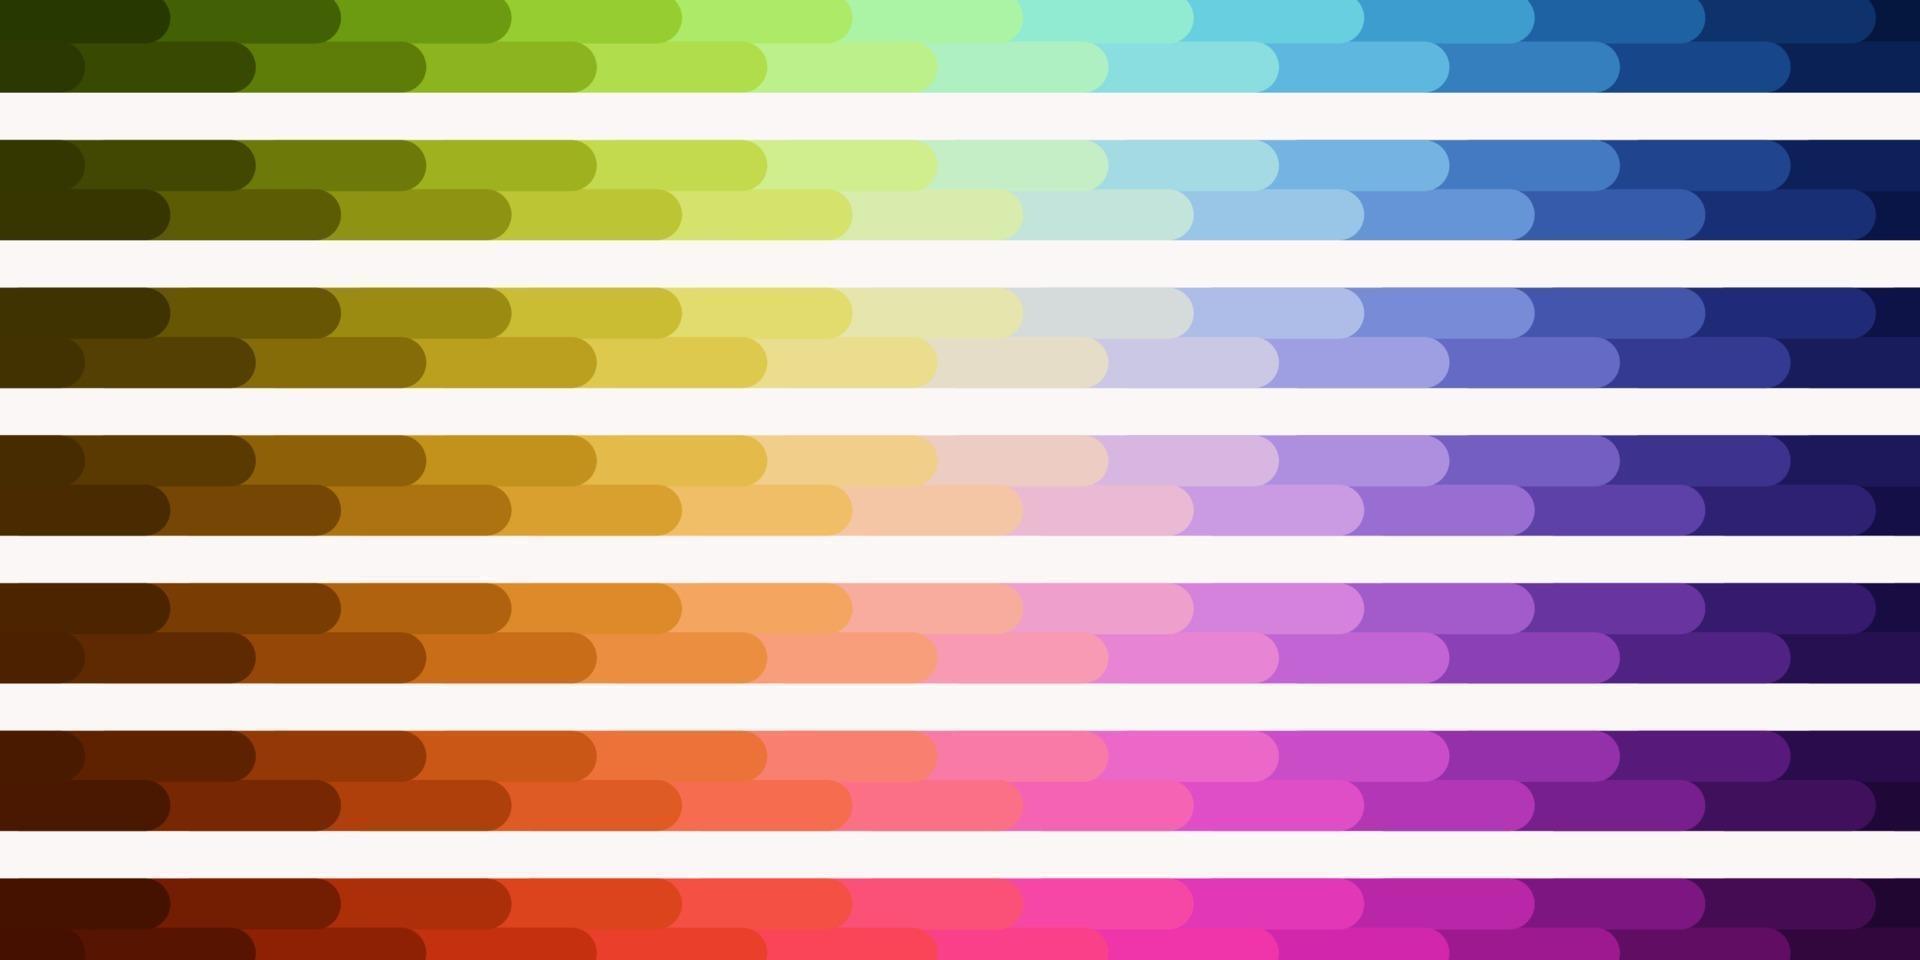 sfondo vettoriale multicolore chiaro con linee.